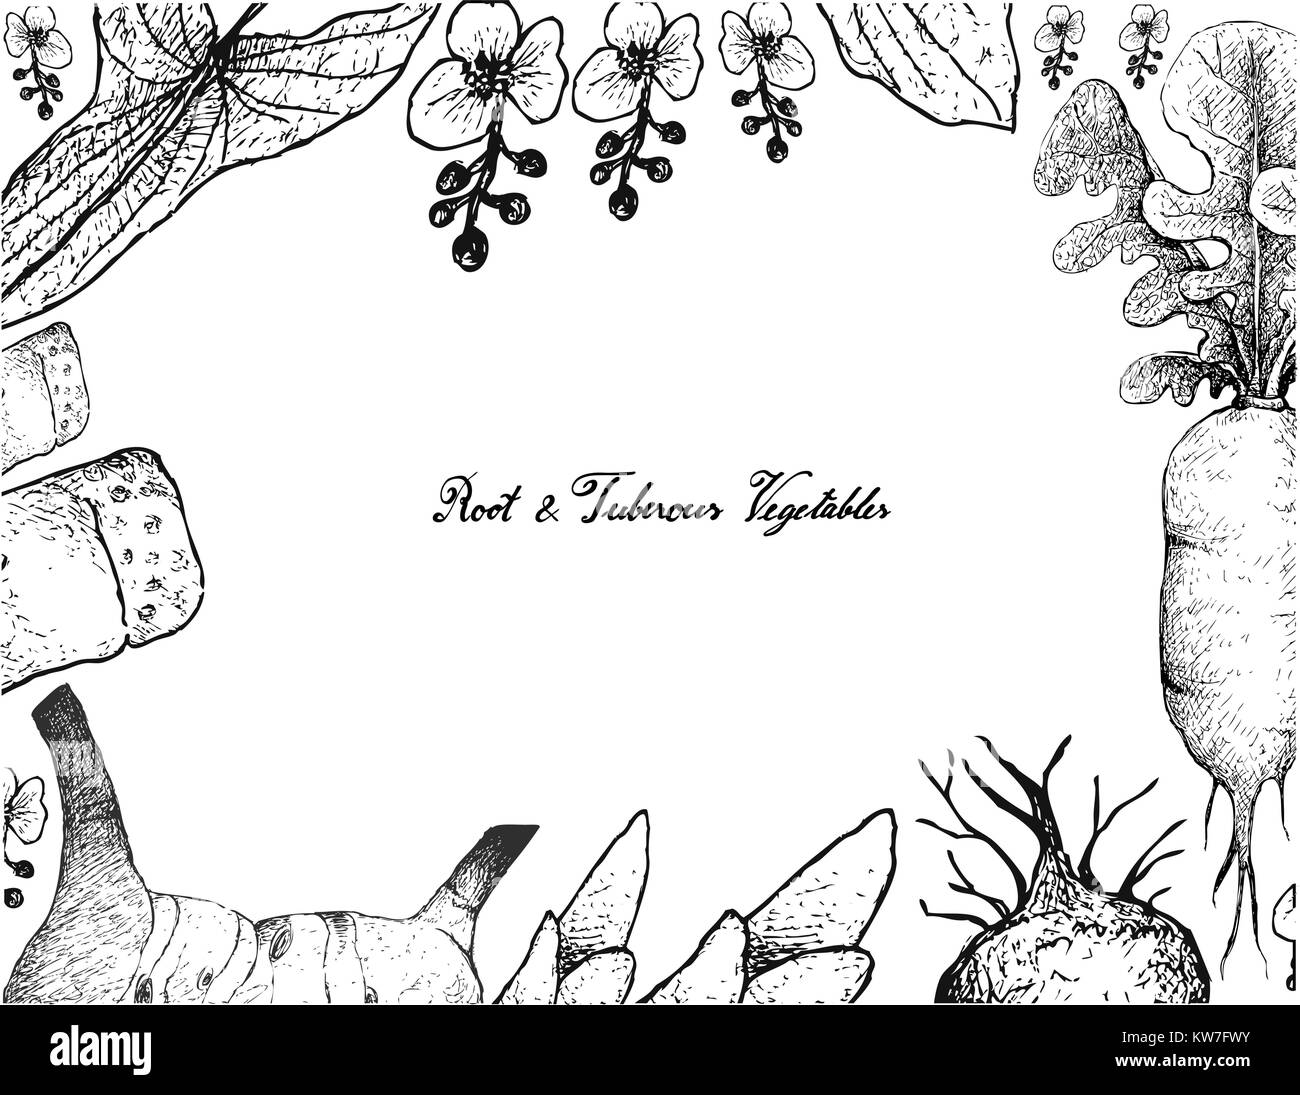 Radici tuberose e verdure, illustrazione Telaio del lato Bozzetto di Galangal, Daikon, latifoglie Arrowhead e bambù piante isolate su Whi Illustrazione Vettoriale